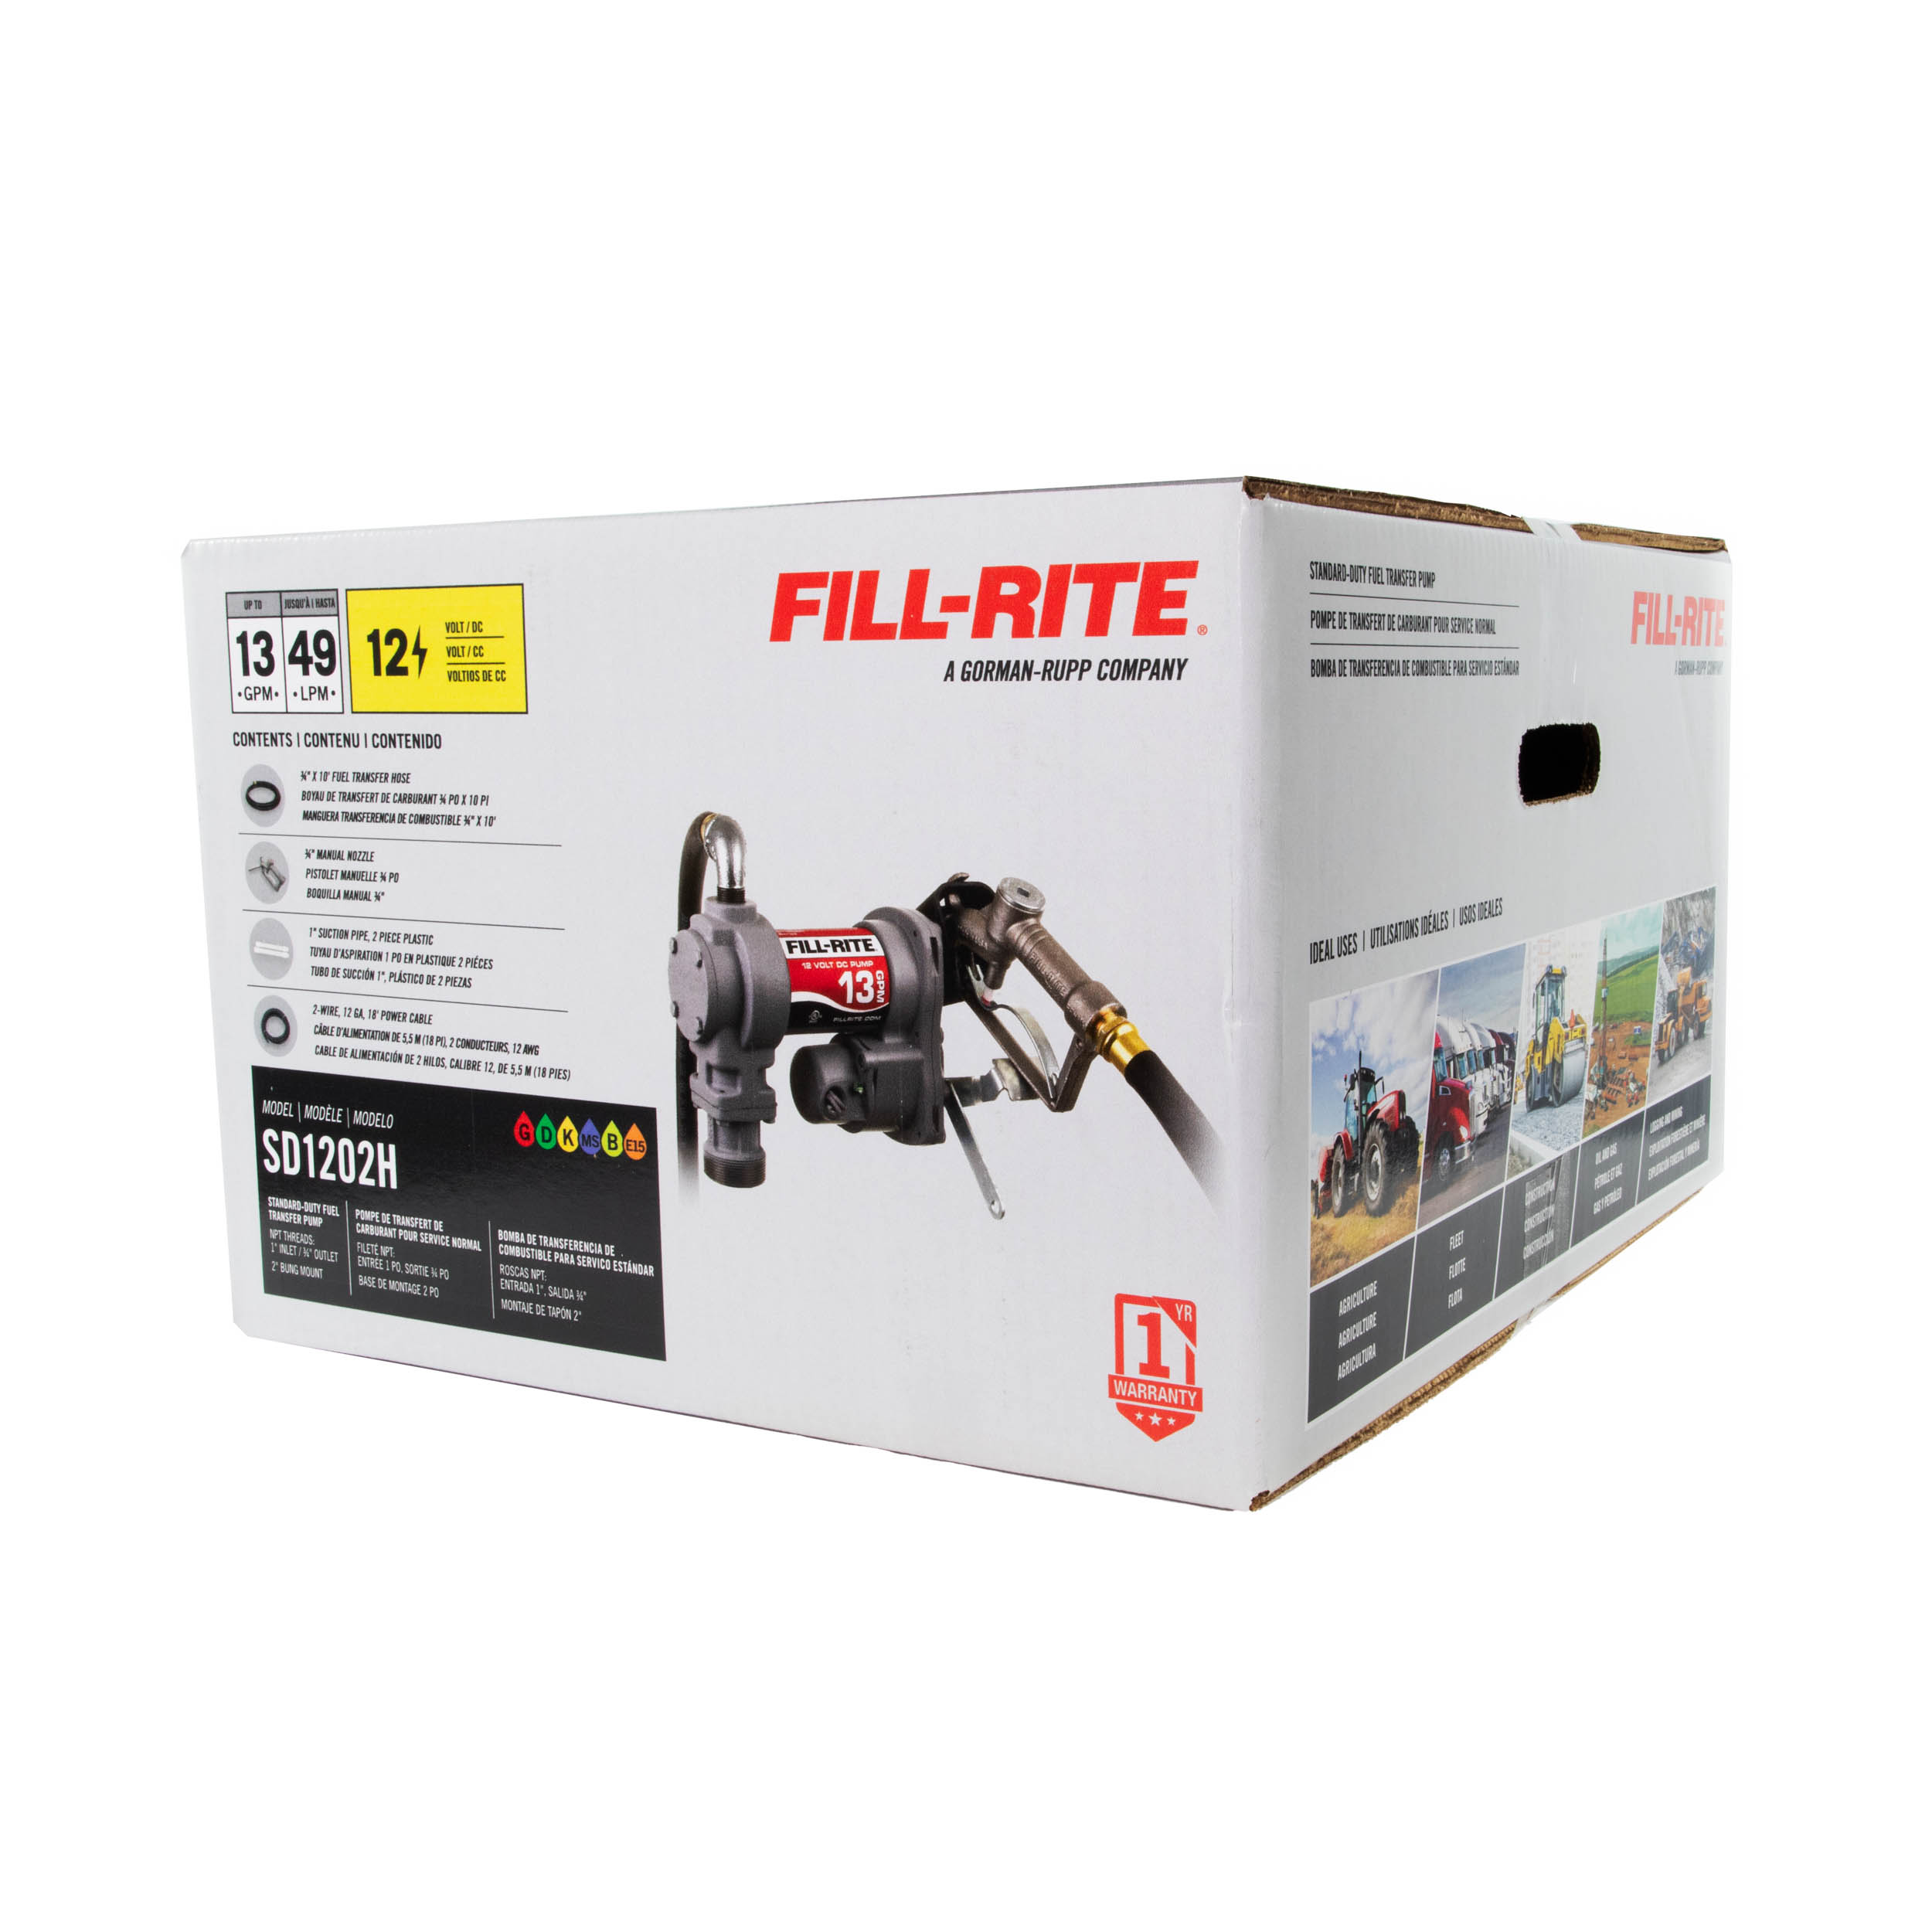 Fill-Rite-SD1202H-12V-fuel-transfer-pump-in-packaging